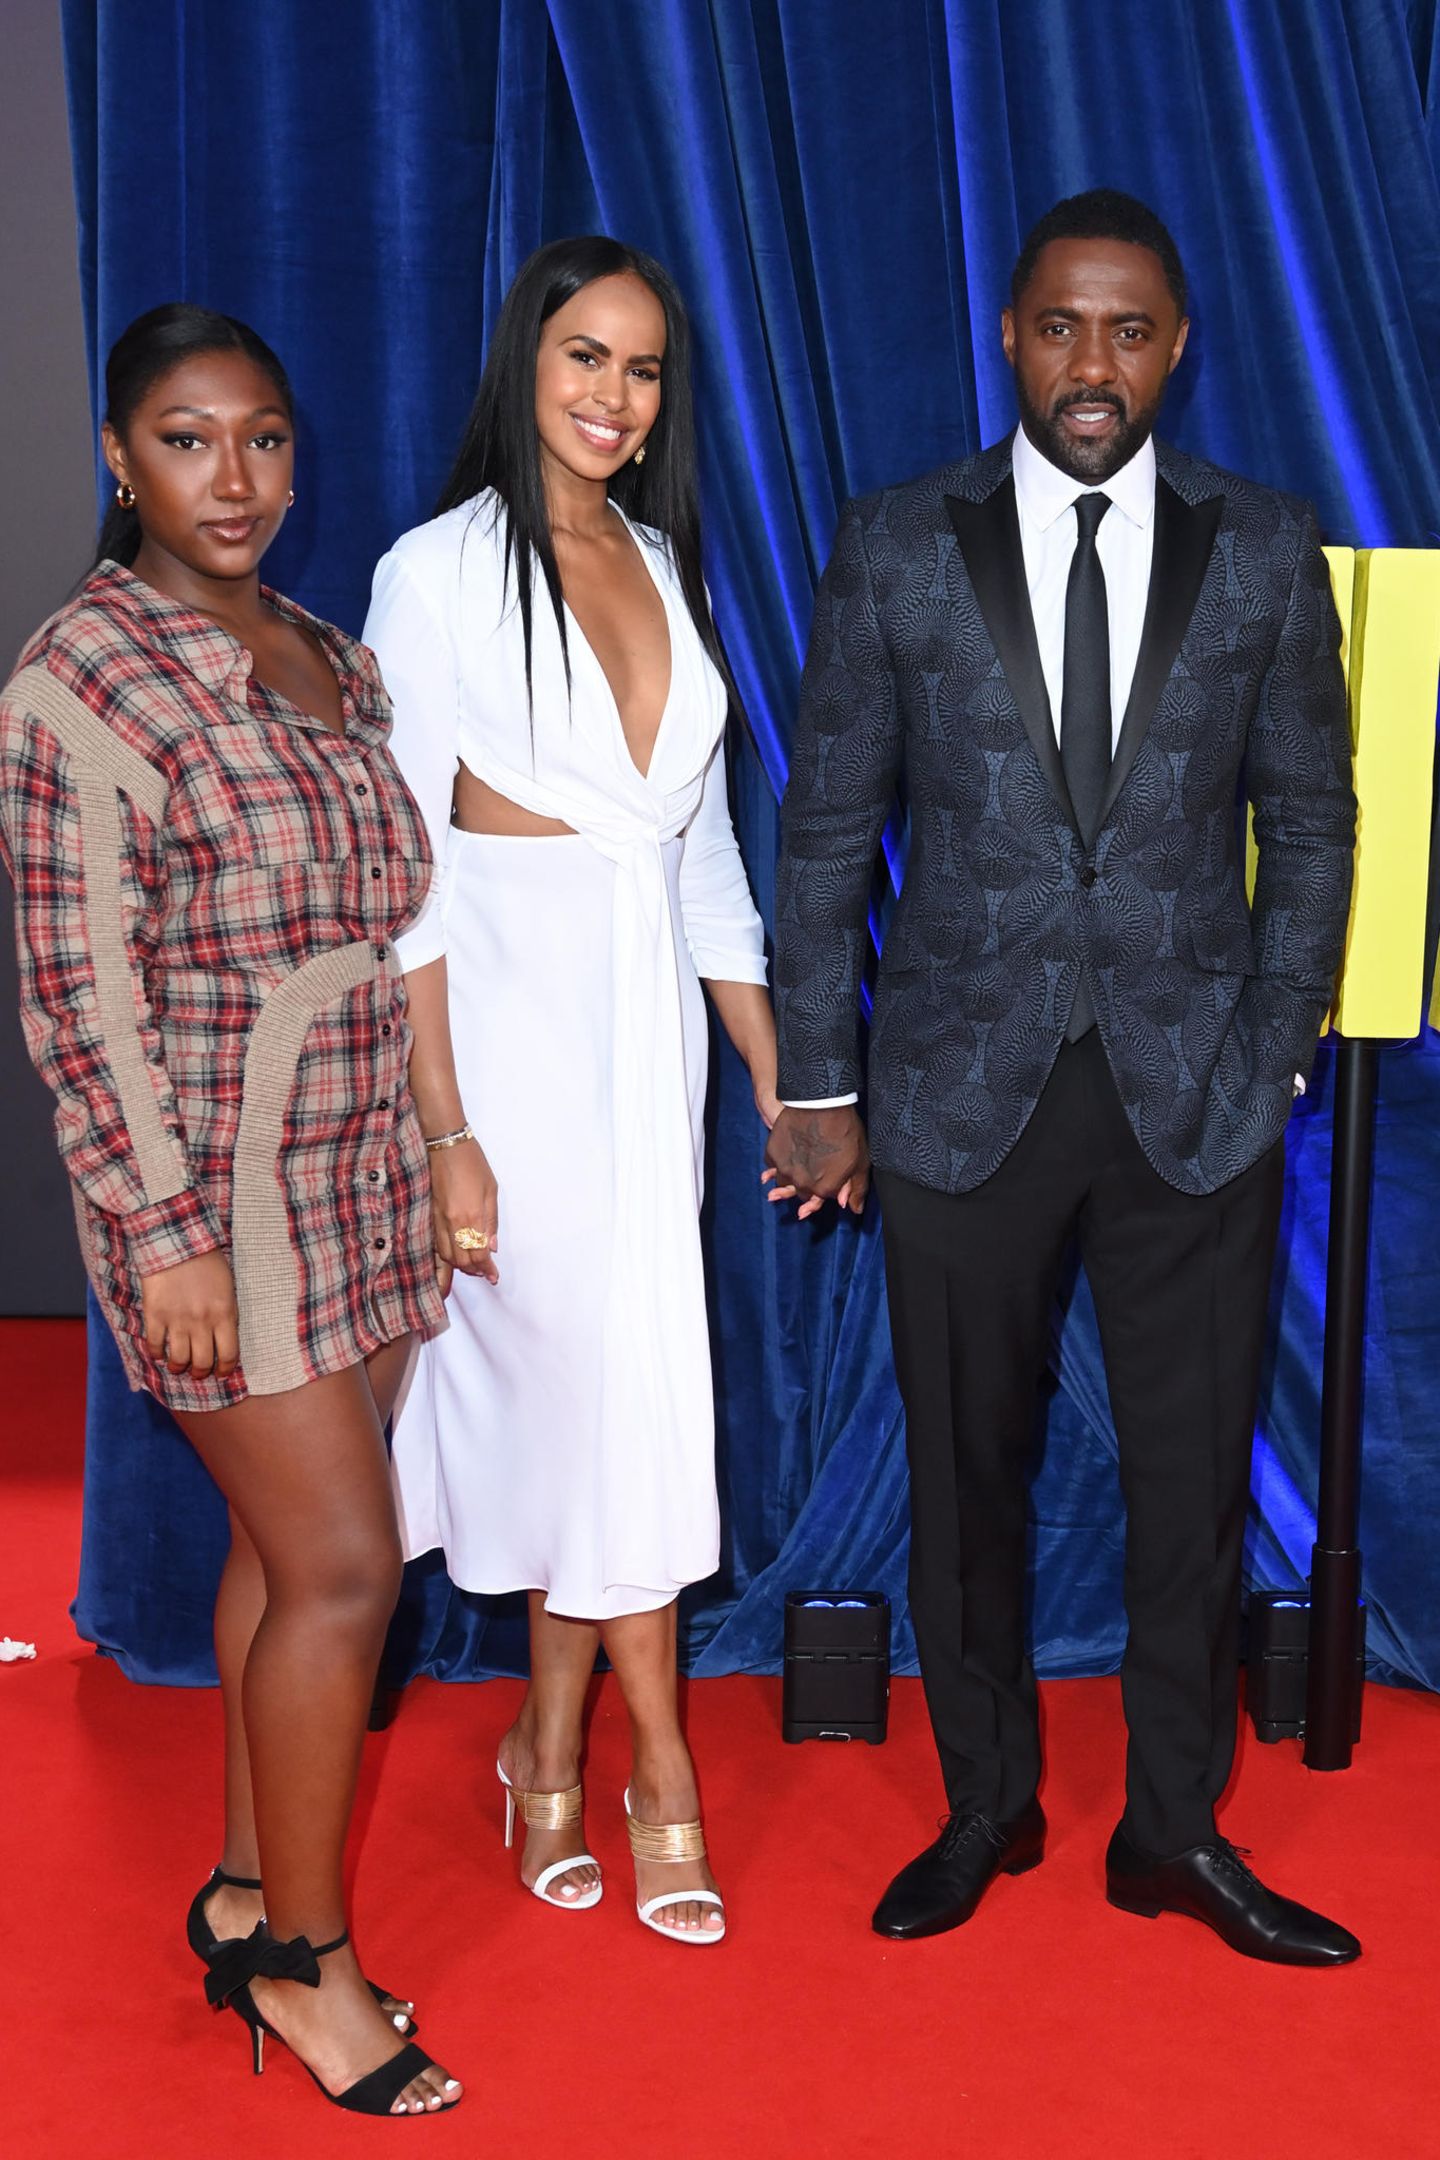 Isan Elber, Sabrina Dhowre Elba und Idris Elba posieren auf dem Red Carpet für die Fotografen.